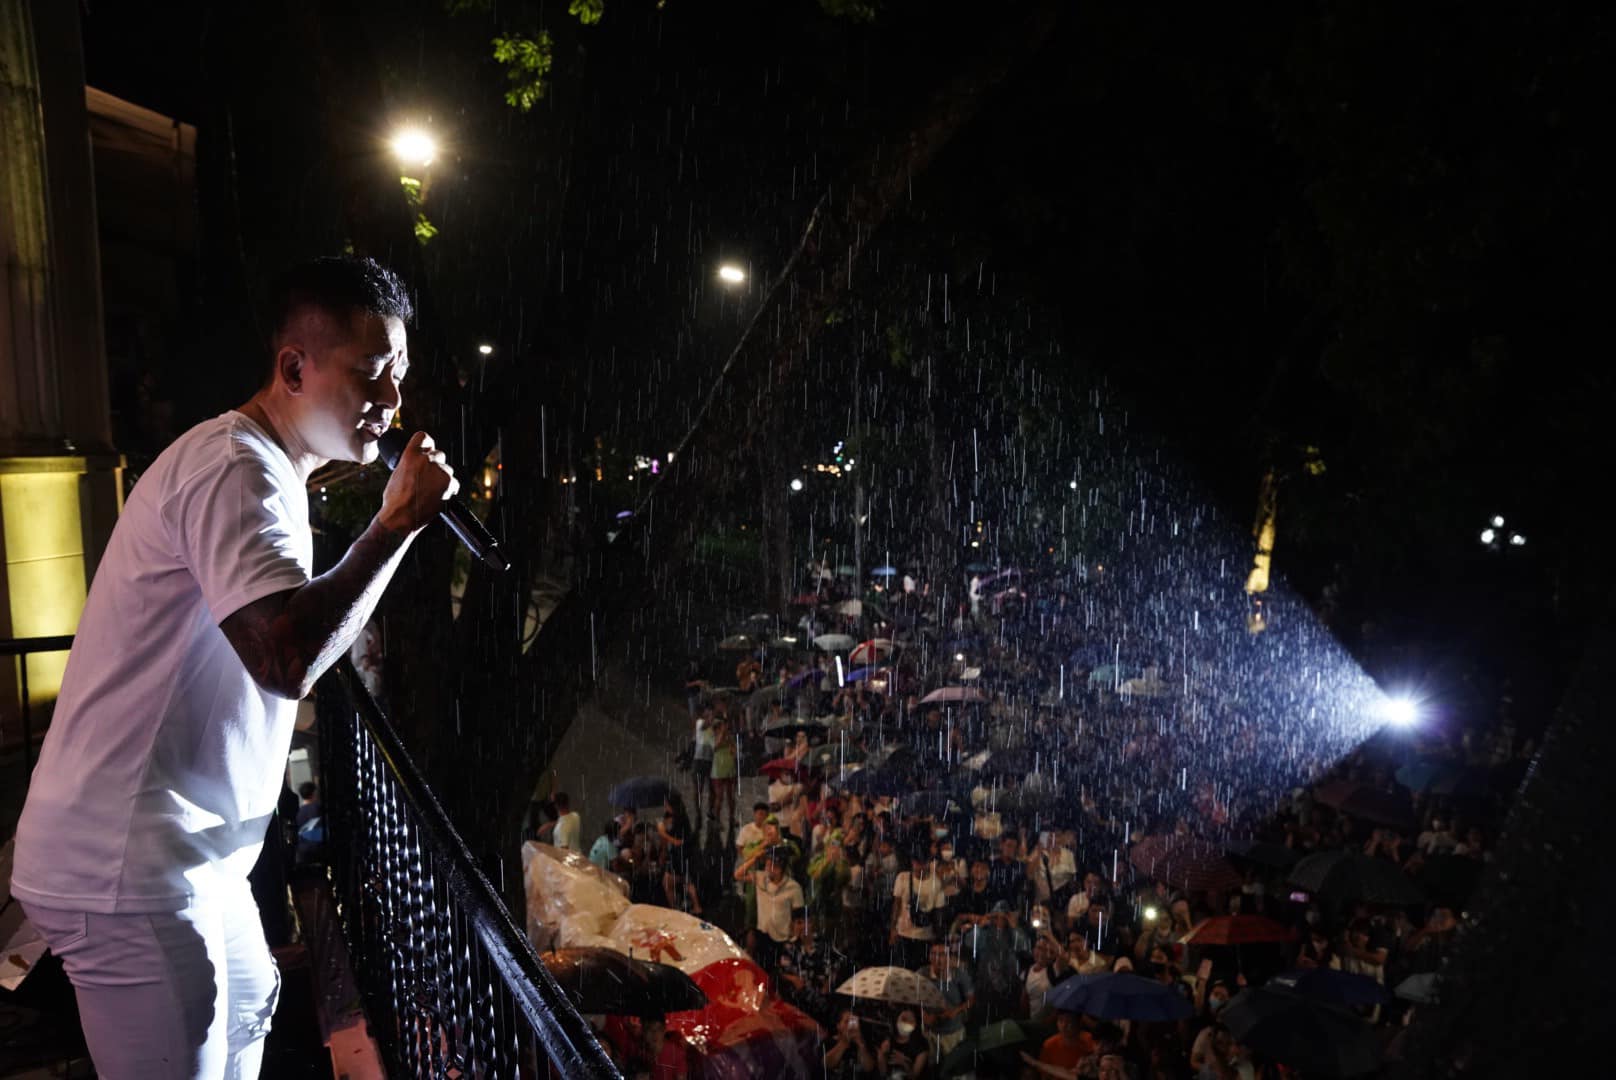 Ca sĩ Tuấn Hưng xúc động chia sẻ khoảnh khắc hàng nghìn khán giả đội mưa nghe hát dưới ban công nhà riêng - Ảnh 4.